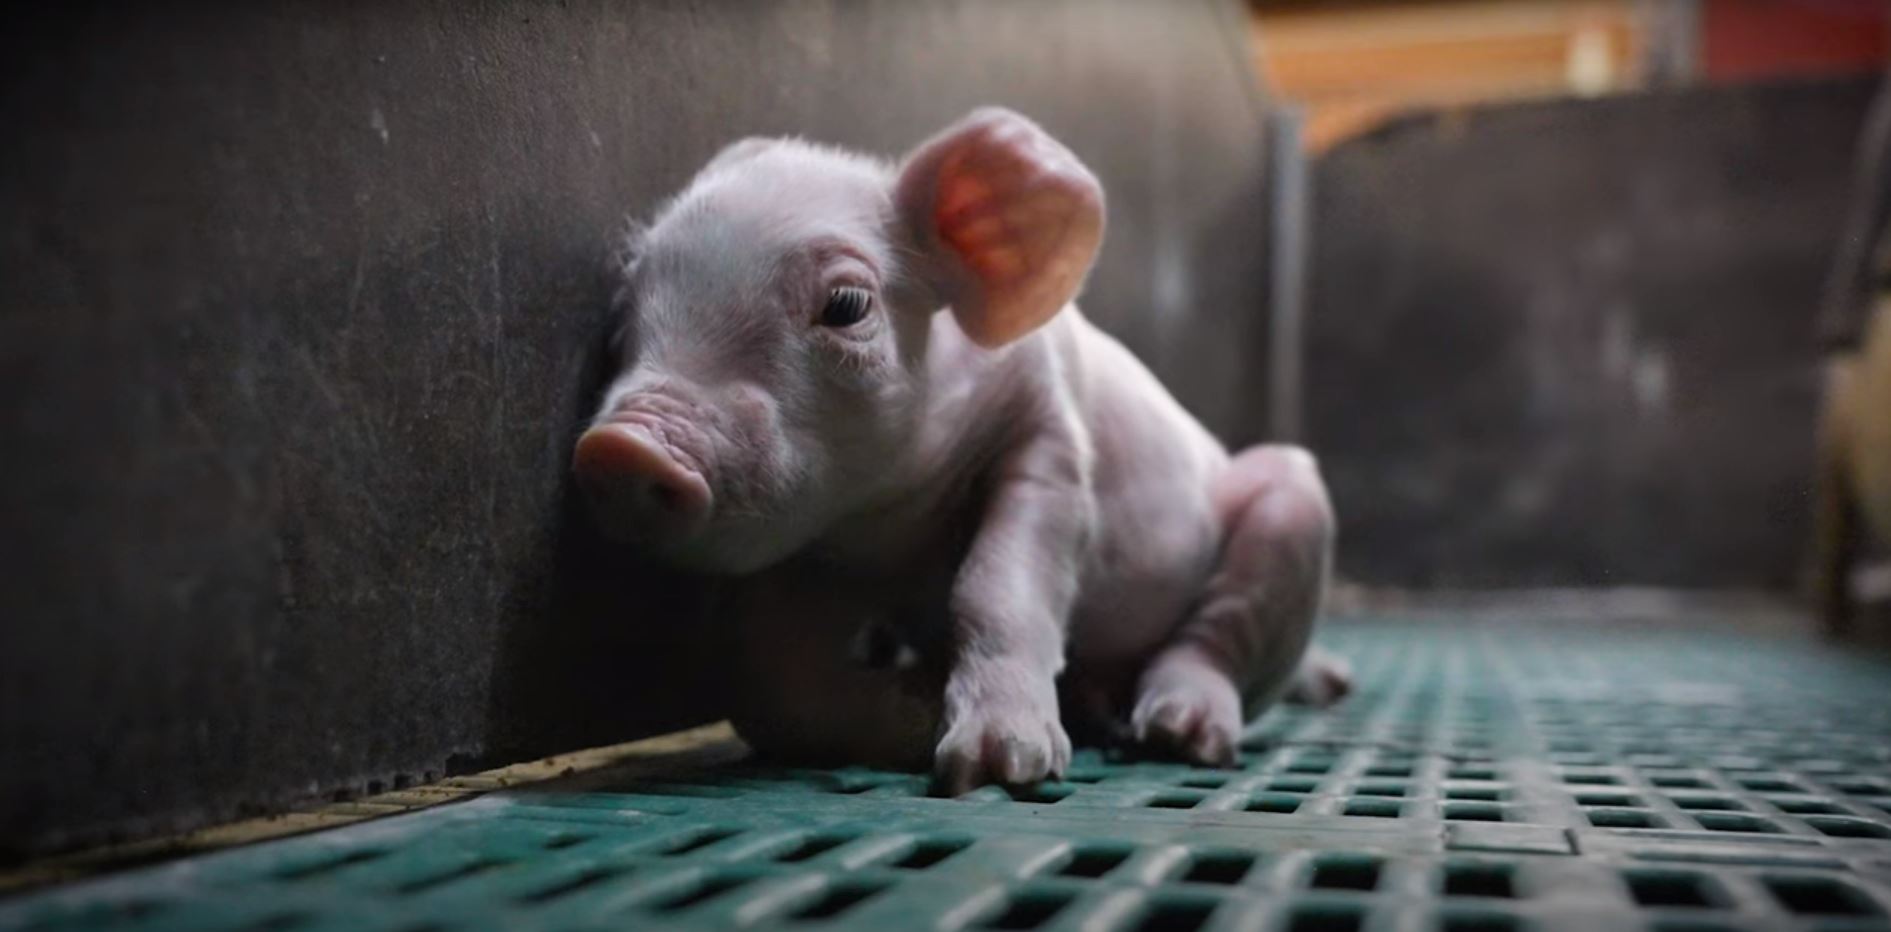 La mutilation des porcs - QUATRE PATTES en France - Organisation mondiale  de protection des animaux